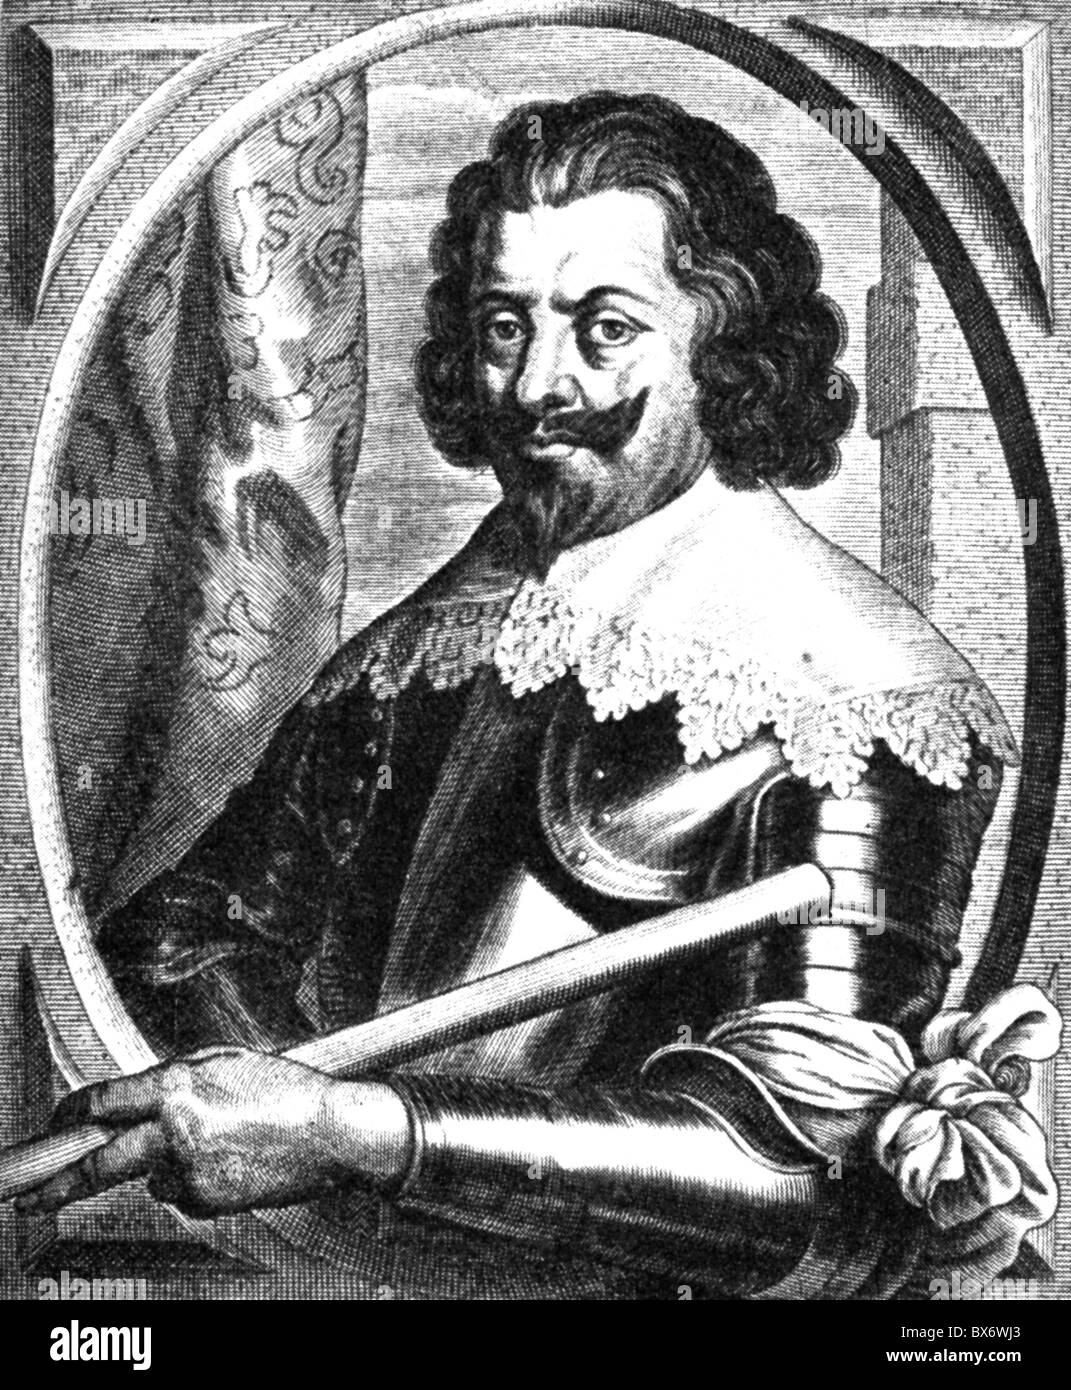 Werth, Johann von, vers 1595 - 16.9.1652, général impérial, demi-longueur, gravure sur cuivre par Pieter de Jode, 17. Jahrhundert, , n'a pas d'auteur de l'artiste pour être effacé Banque D'Images